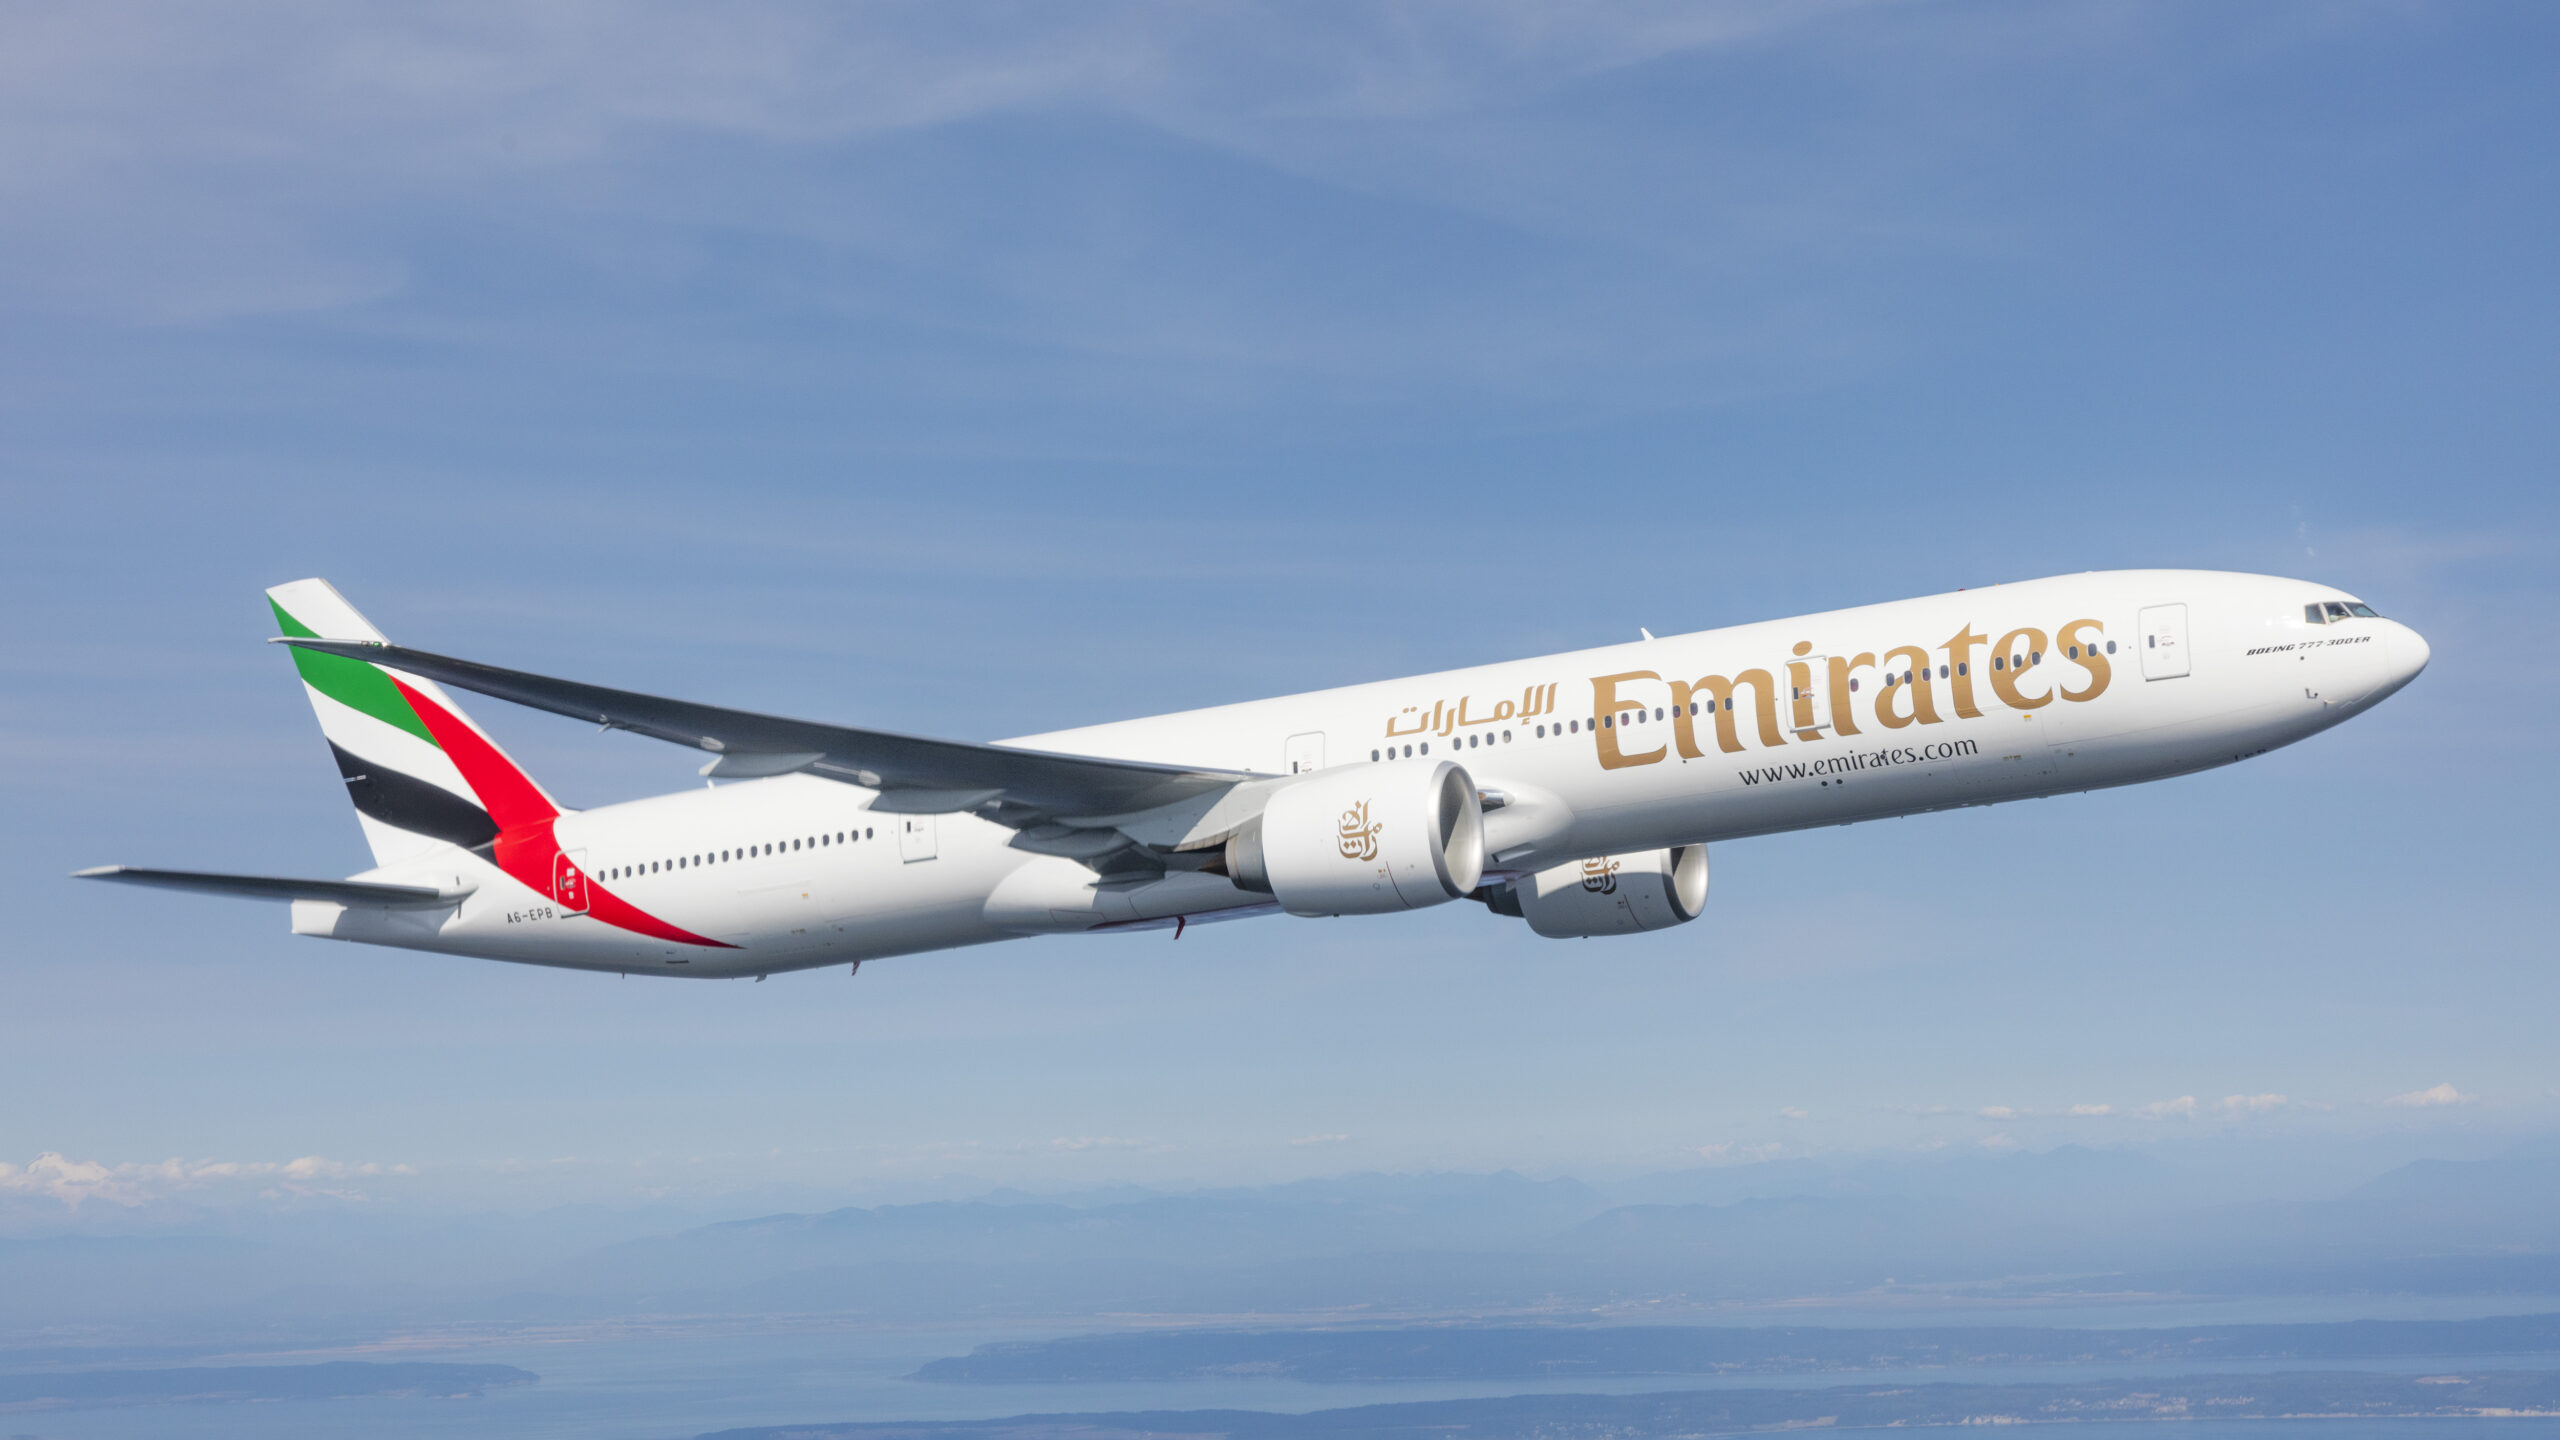 Emirates, Nisan ayından itibaren Hindistan seferlerini tekrar pandemi öncesi seviyeye çıkarıyor